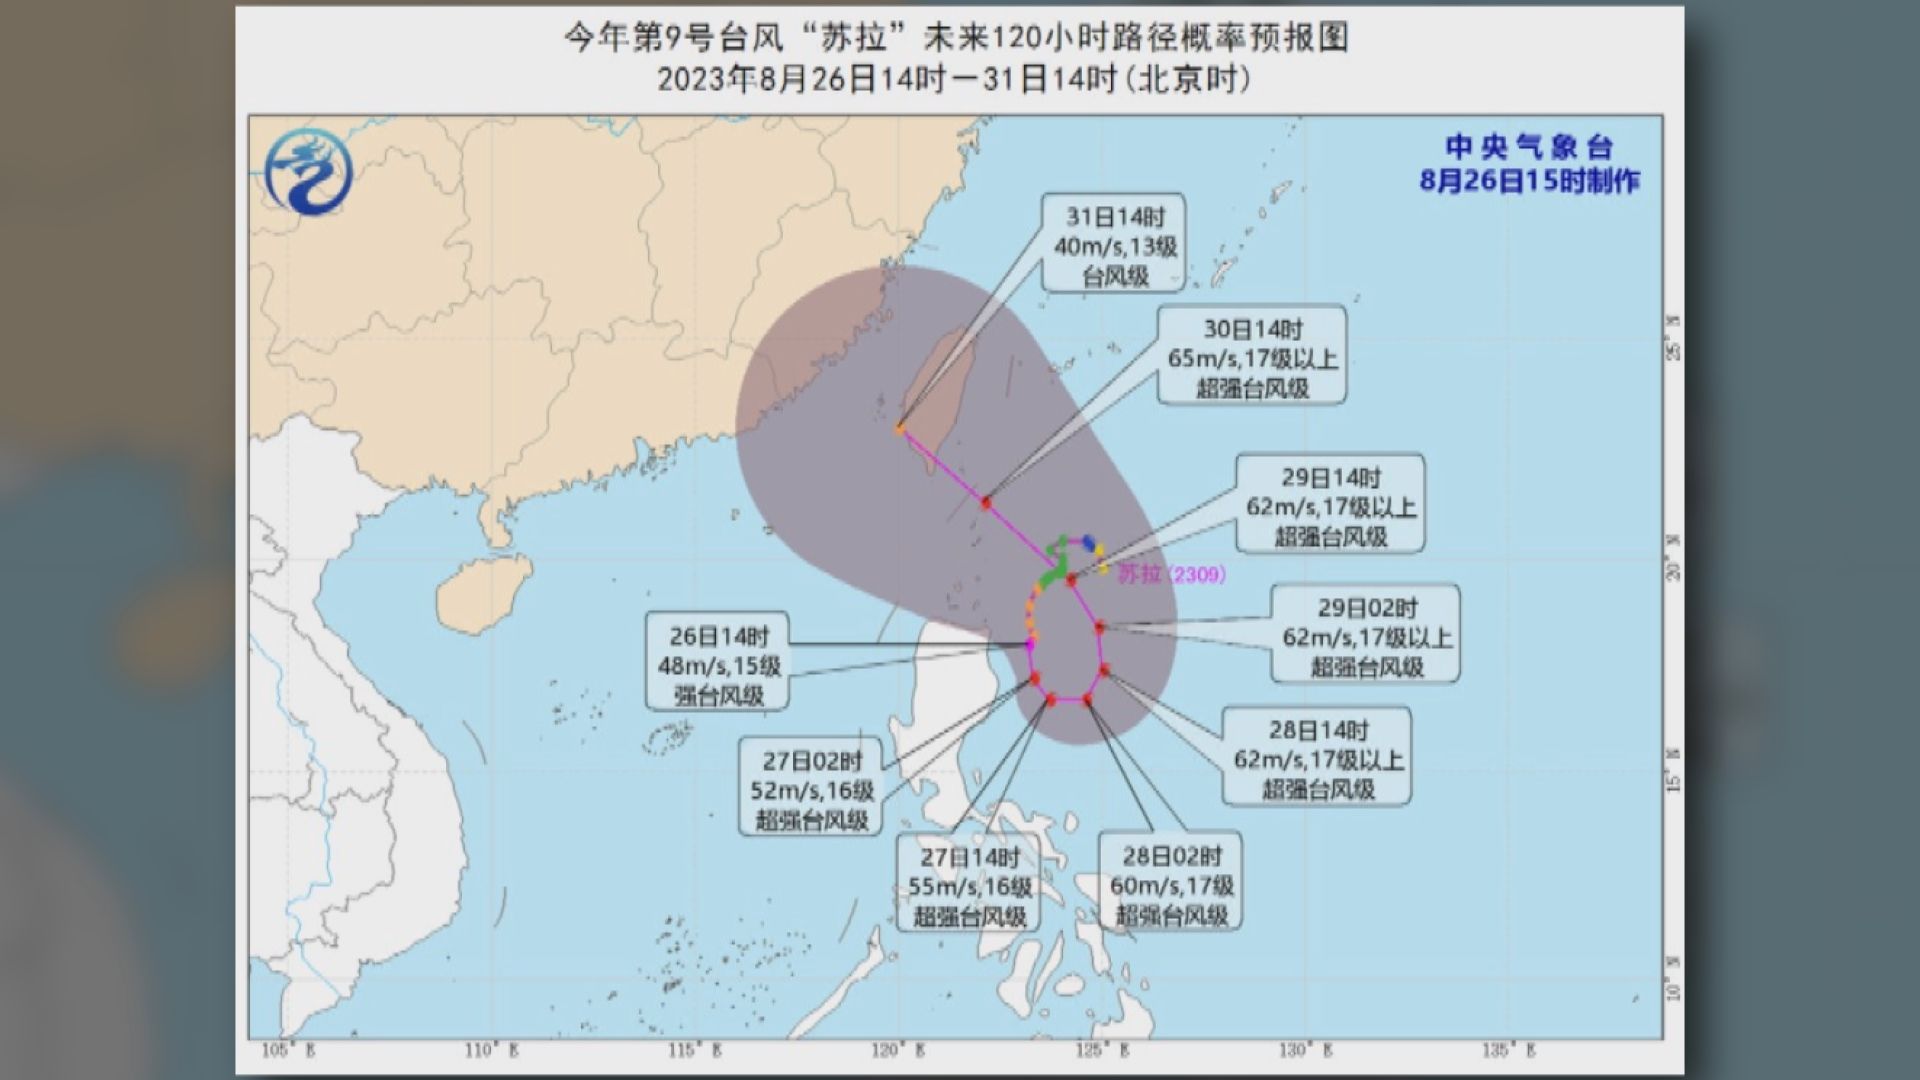 中央氣象台料「蘇拉」能達到超強颱風級